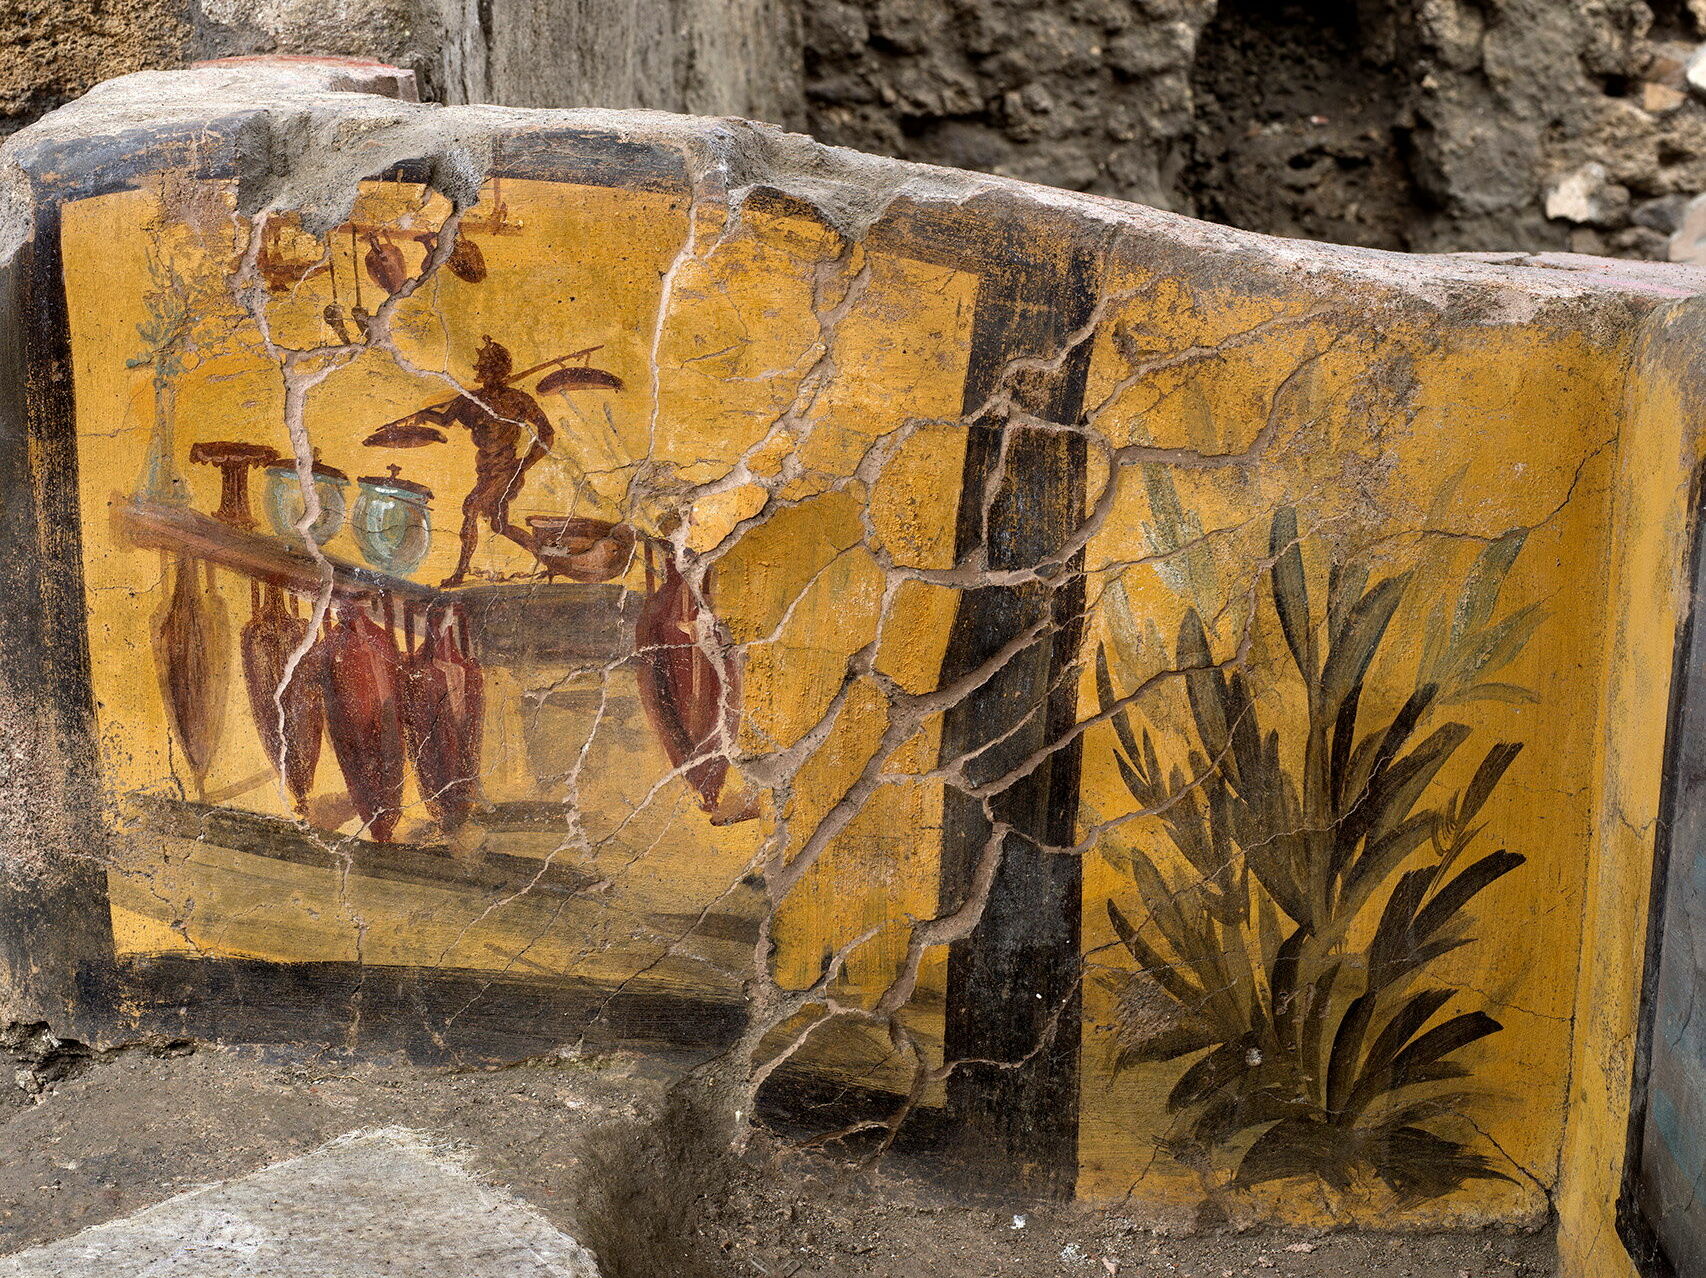 Fresklerle süslü tezgahta bulunan yemek kalıntıları, Pompeii'nin sıradan gündelik menüsünde çok çeşitli hayvansal ürünlerin yer aldığını gösteriyor.